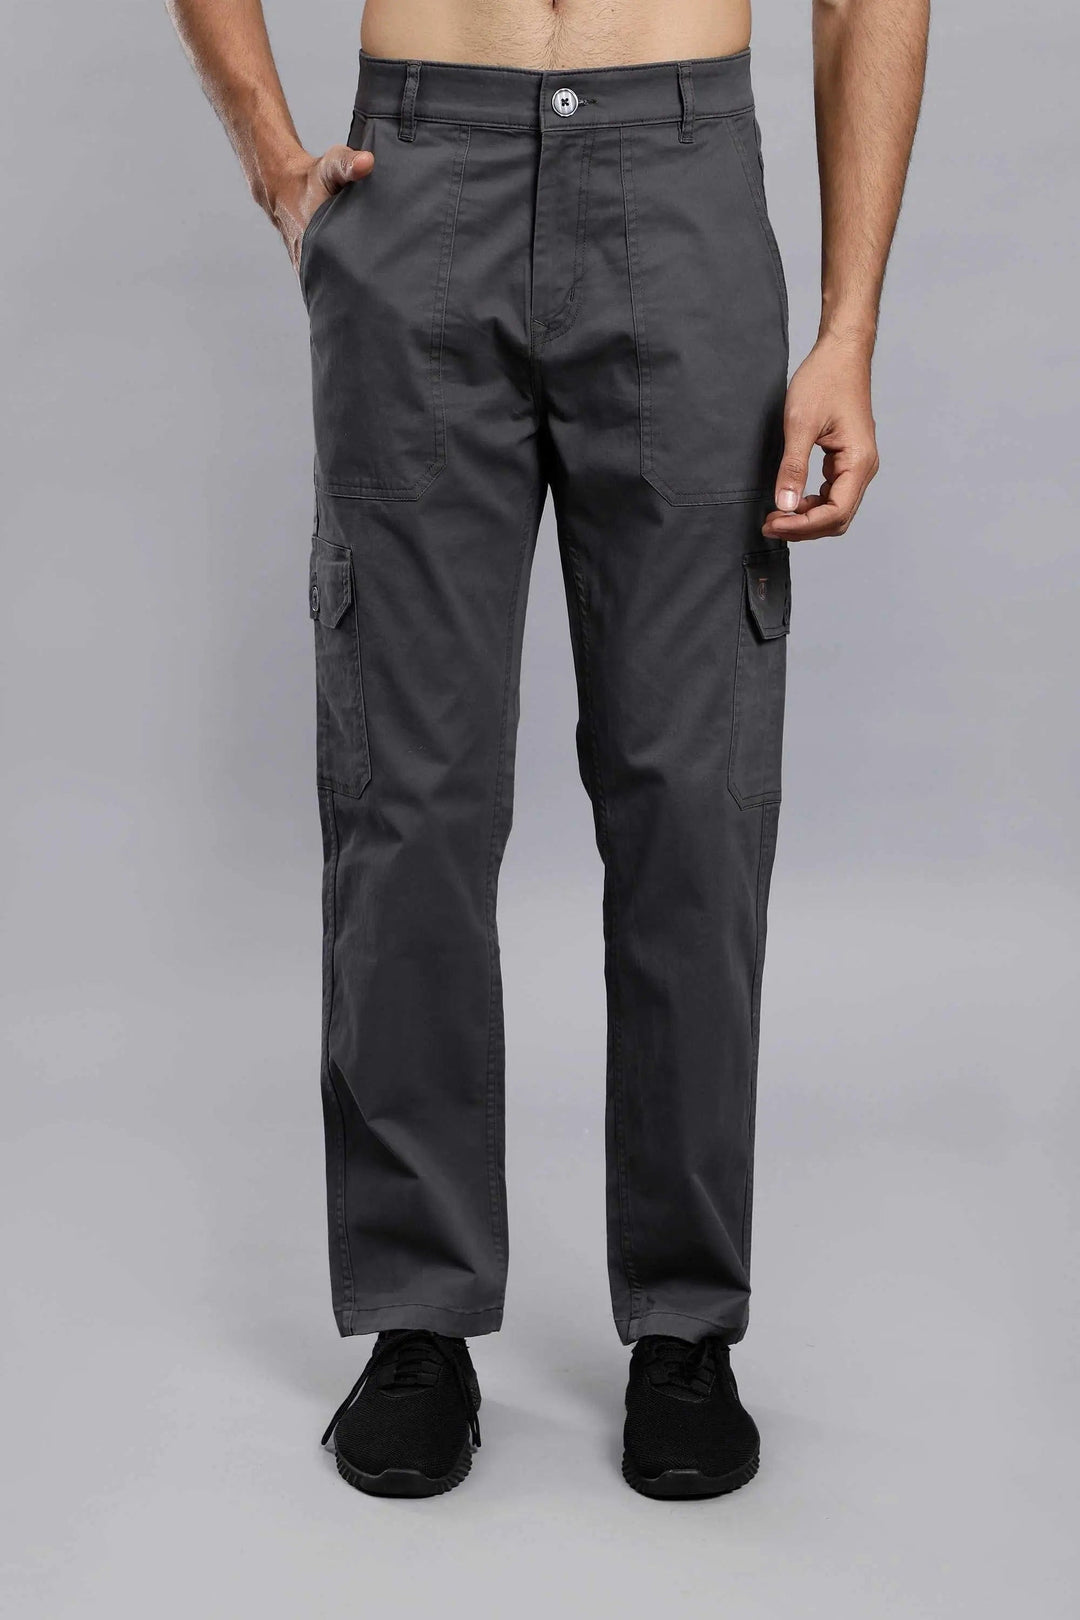 Buy DENIM UNCLE Men Wide Leg 6 Pocket Cargo Denim Jeans (28, Black) at